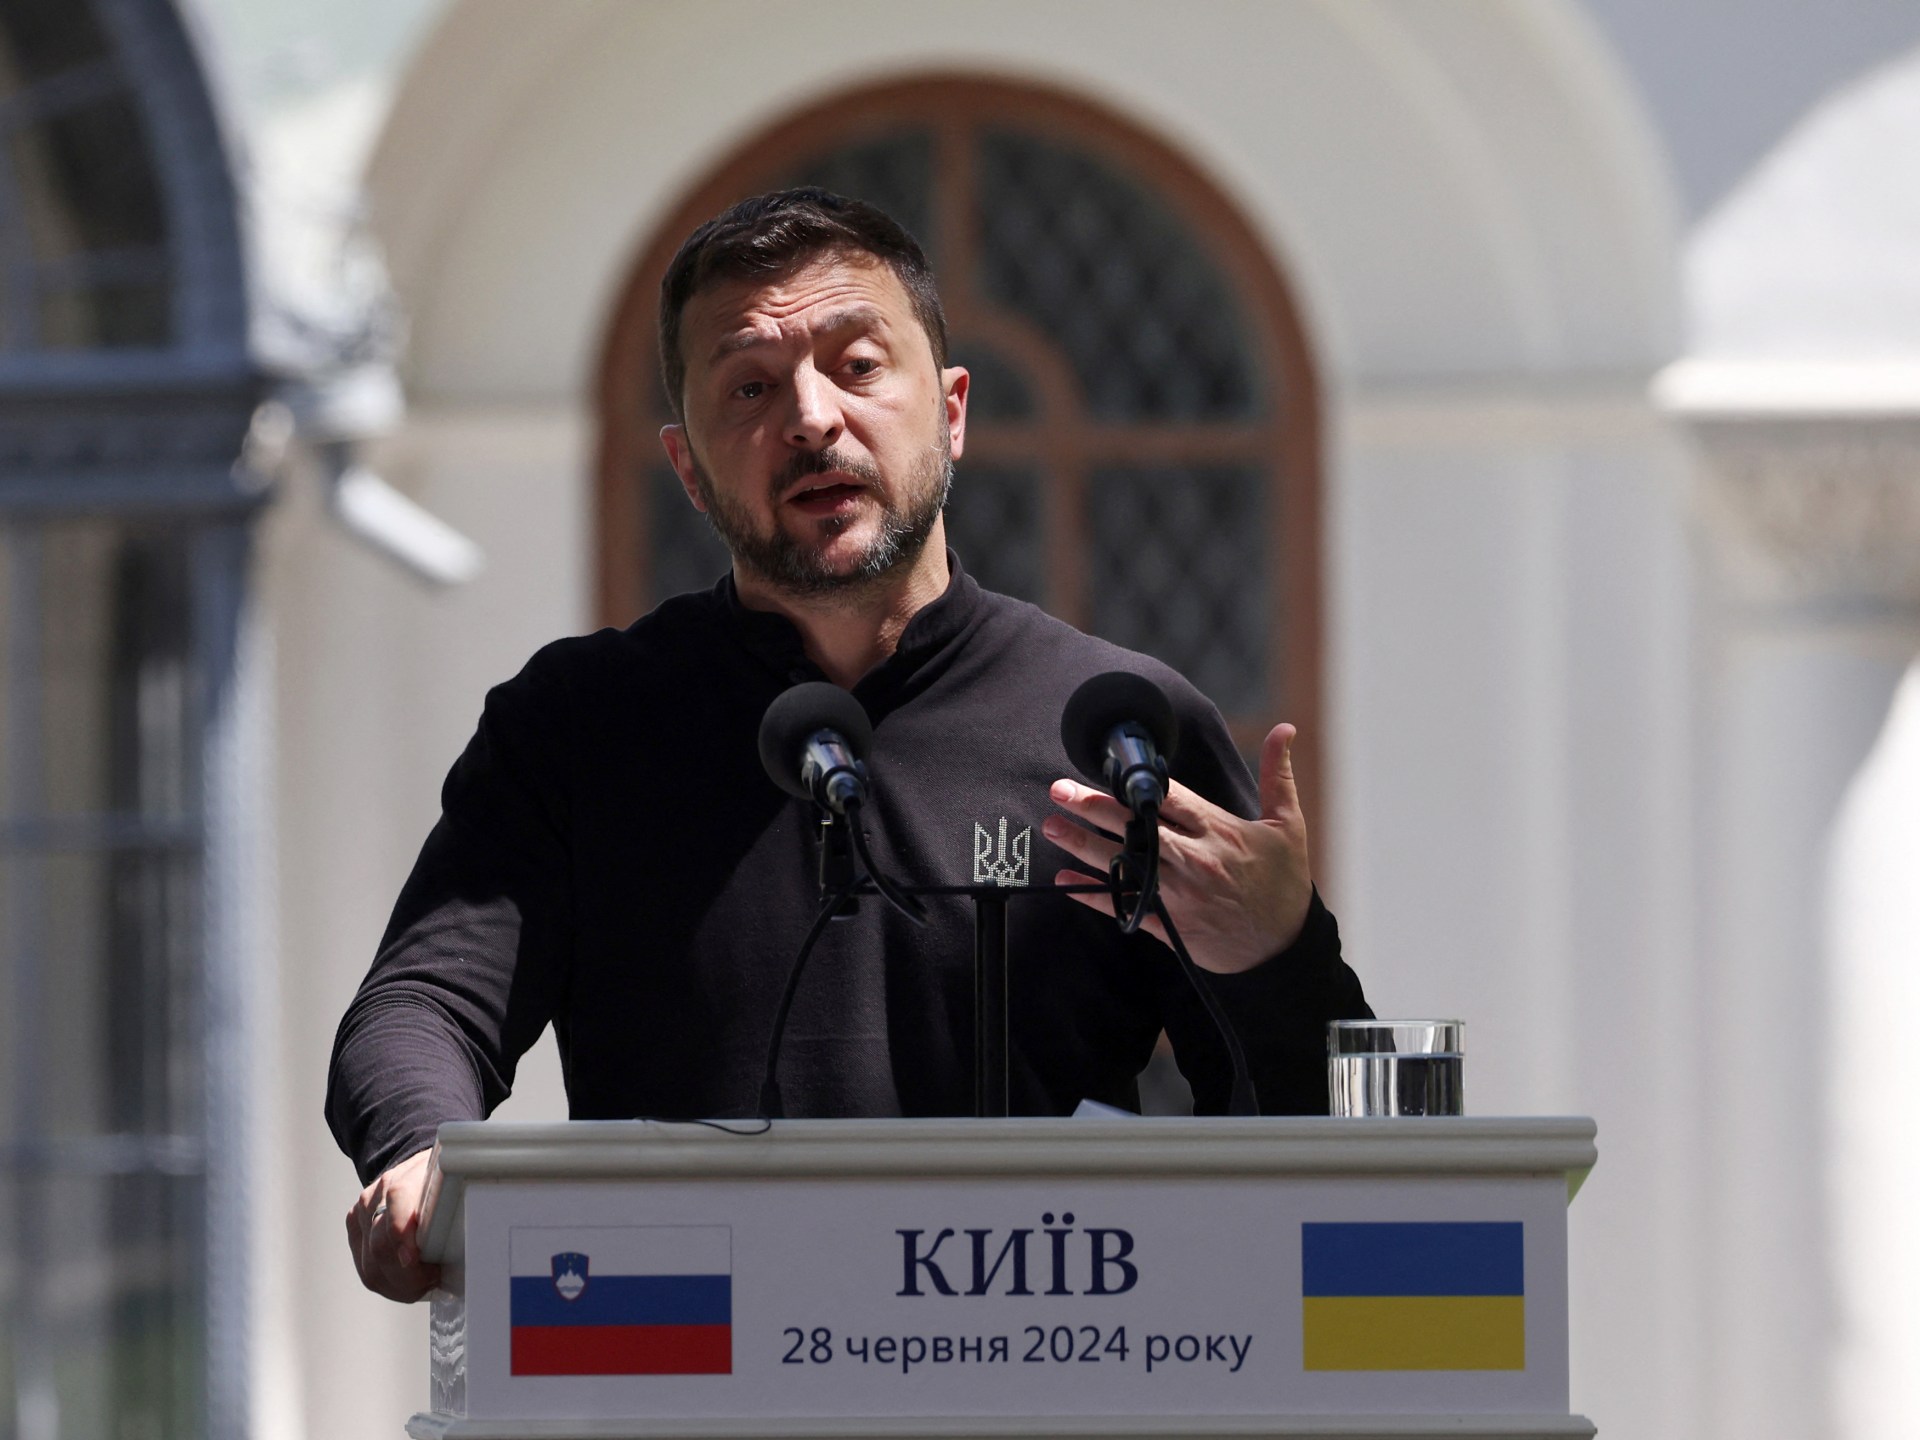 زيلينسكي يعلن عن "خطة شاملة" لإنهاء الحرب مع روسيا | أخبار الحرب بين روسيا وأوكرانيا